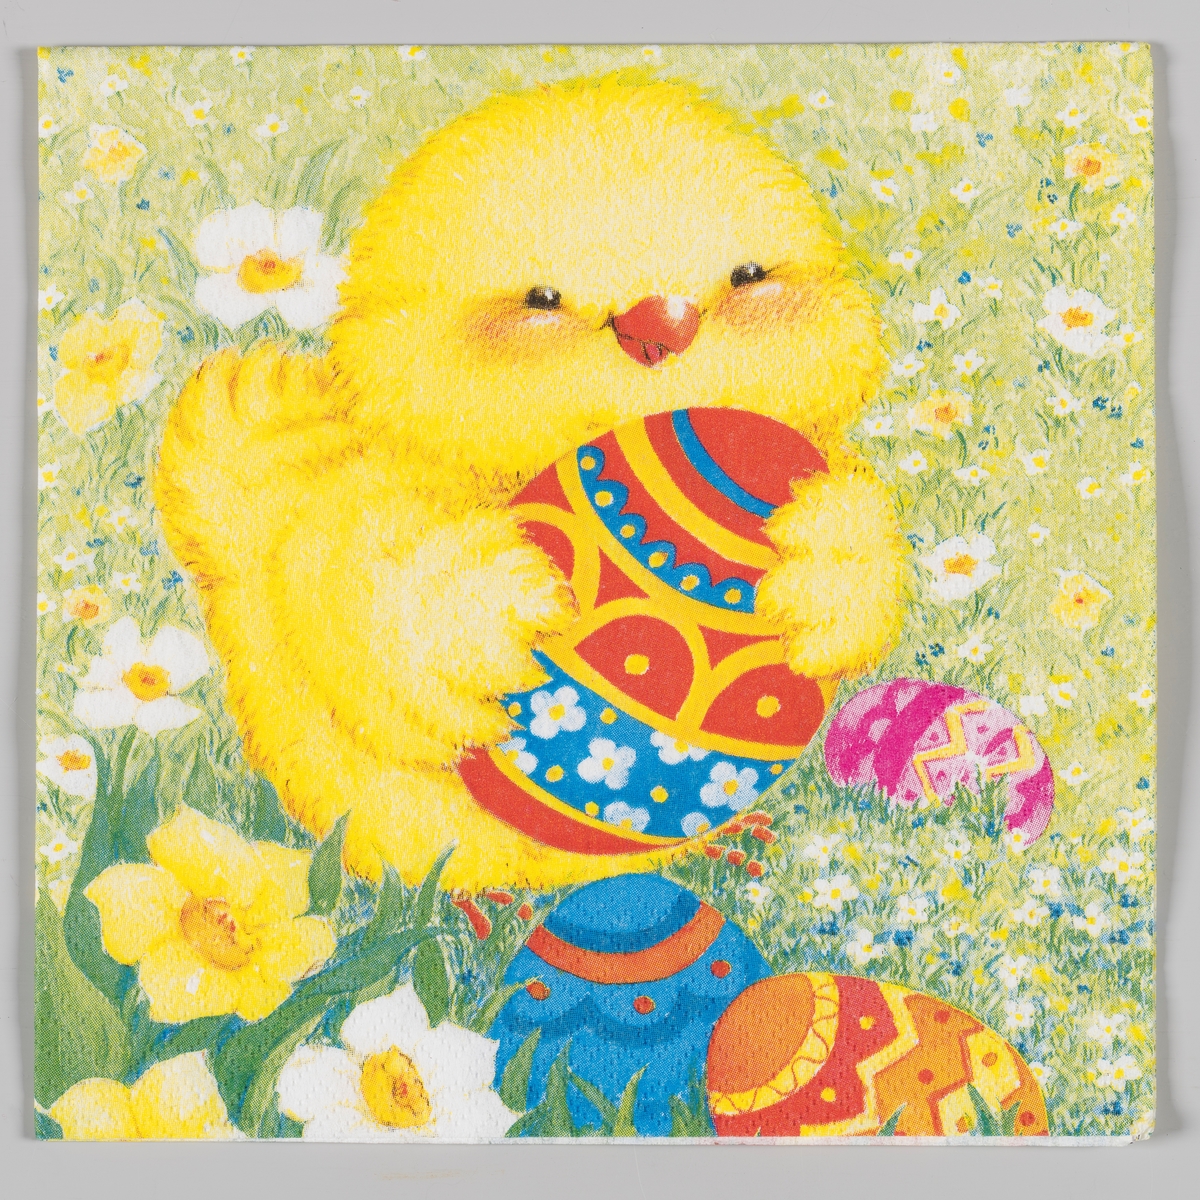 En kylling holder et dekorert påskeegg med vingene sine. Dekorerte påskeegg, påskeliljer og hvite og blå blomster i gresset rundt kyllingen.